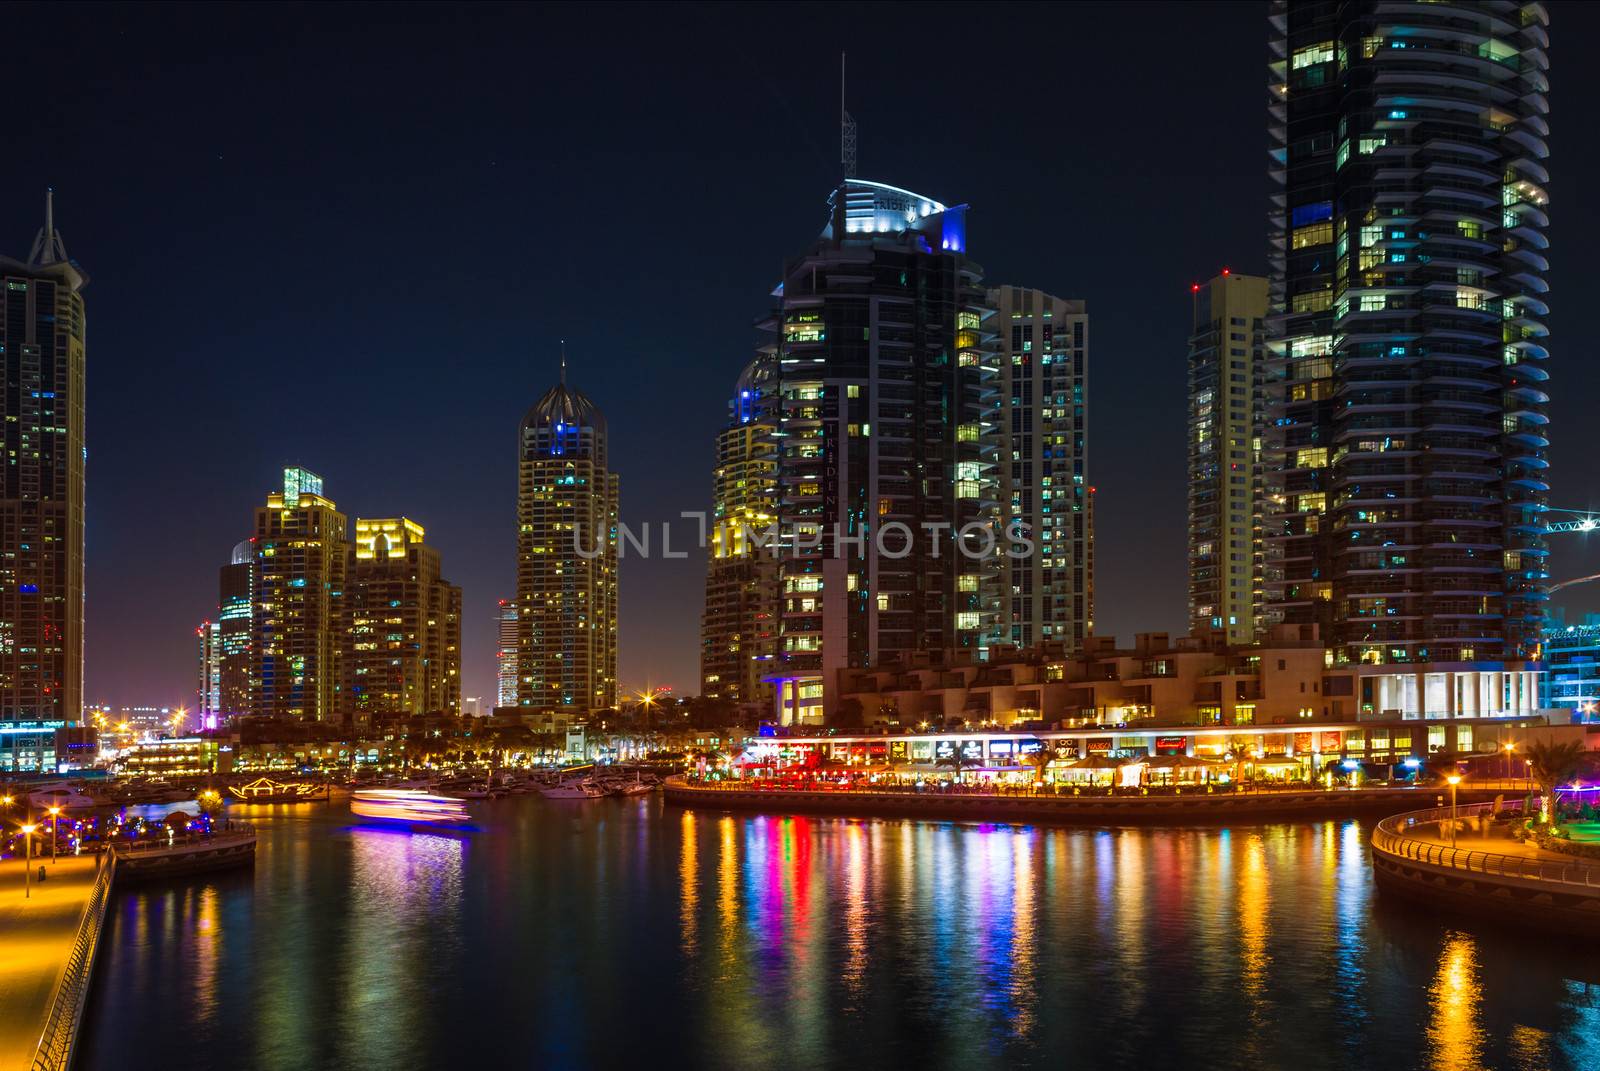 Nightlife in Dubai Marina. UAE. November 14, 2012 by oleg_zhukov